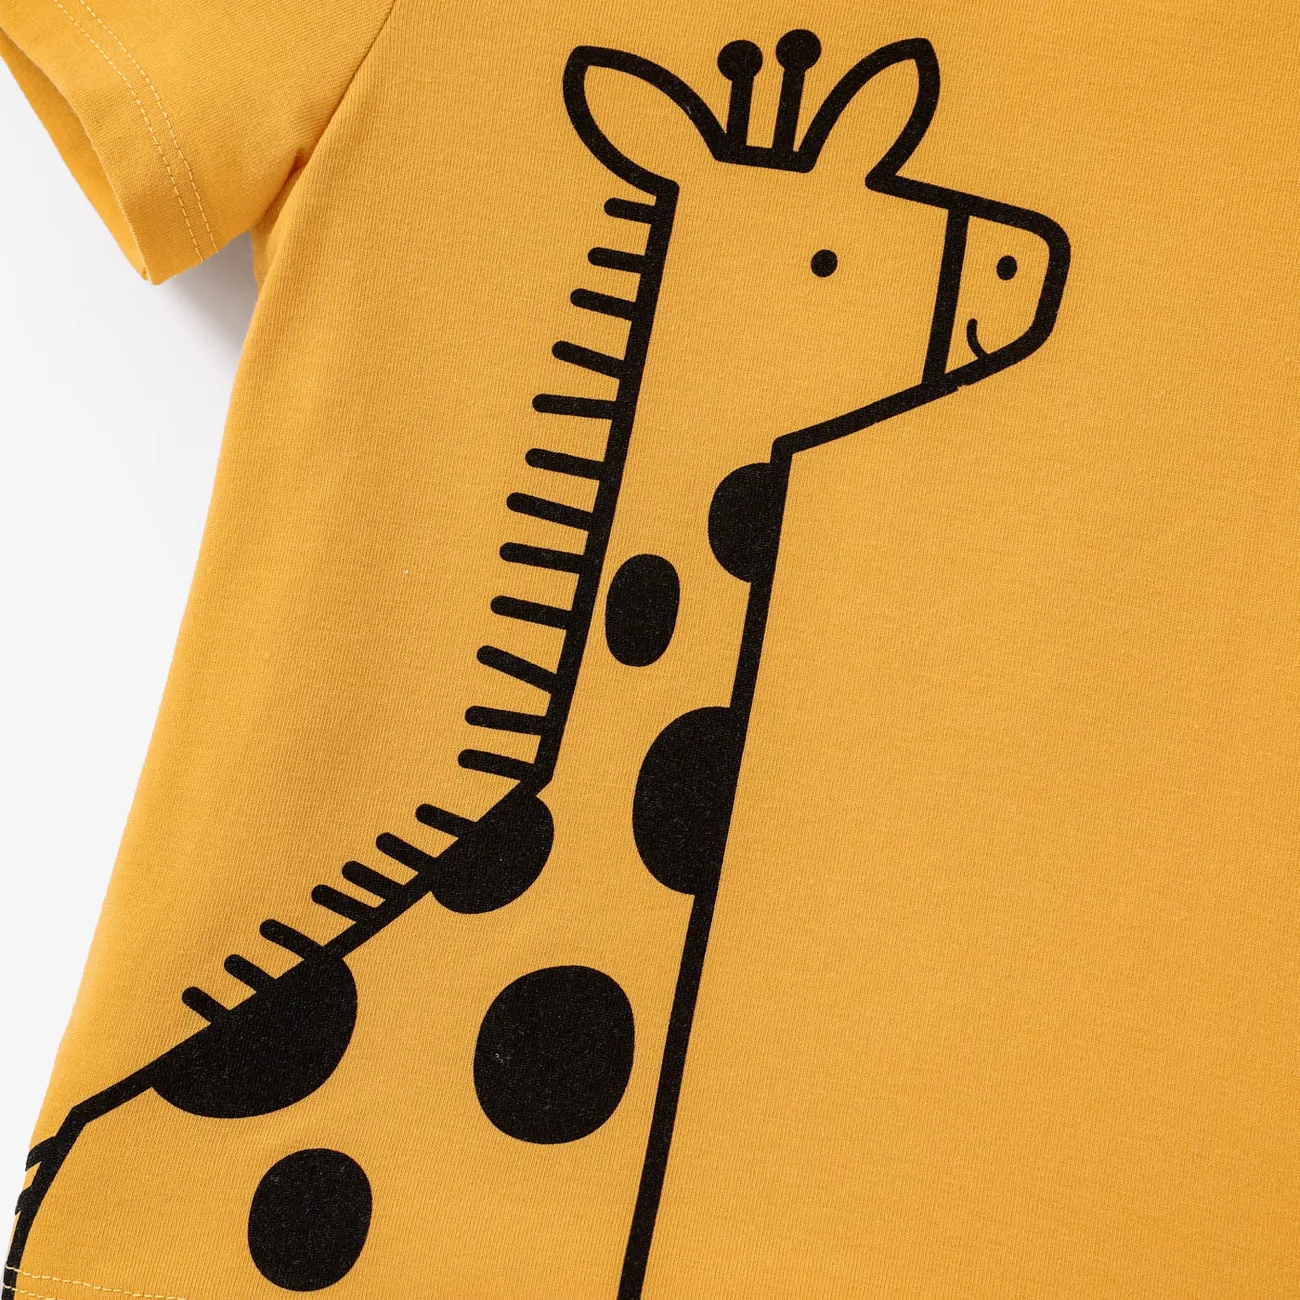 Kleinkinder Jungen Kindlich Löwe Kurzärmelig T-Shirts hellorangegelb big image 1